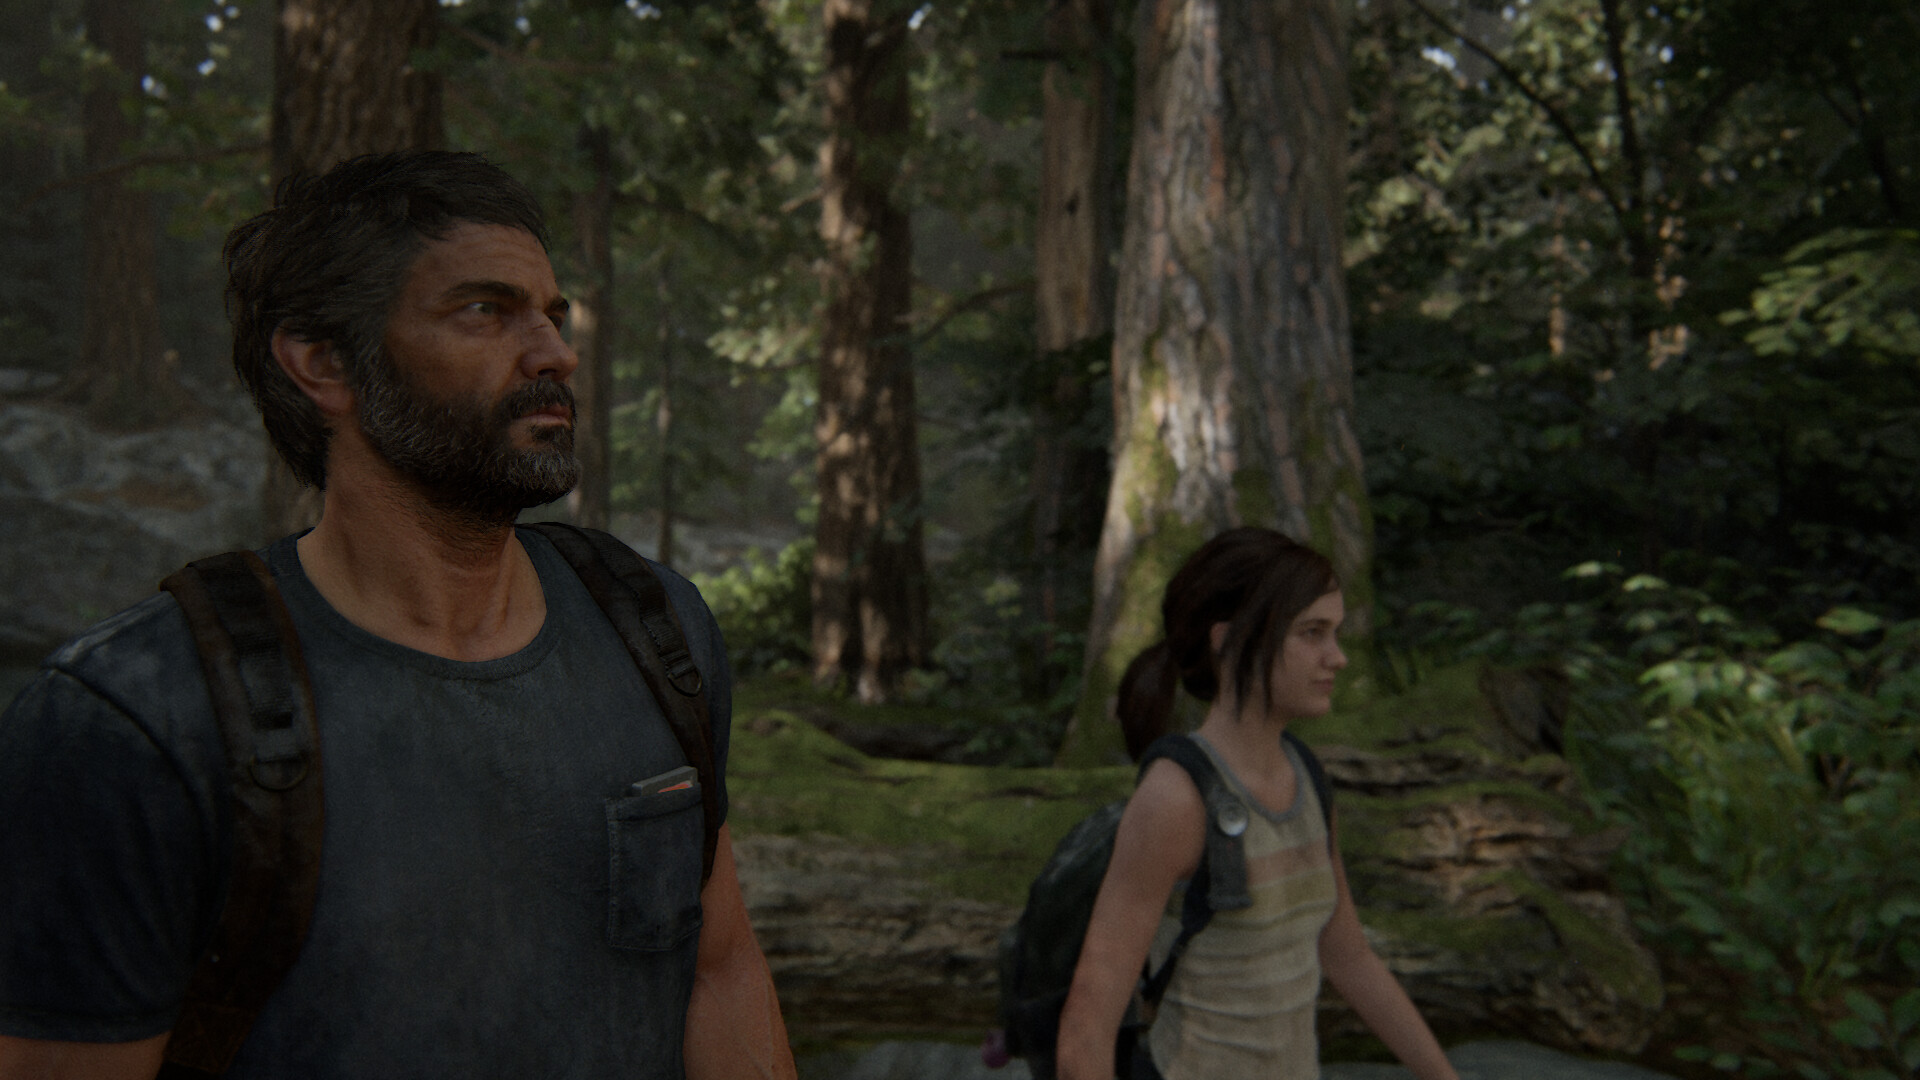 Rafael Hurtado Carrillo - The Last of Us II - Screen Captures